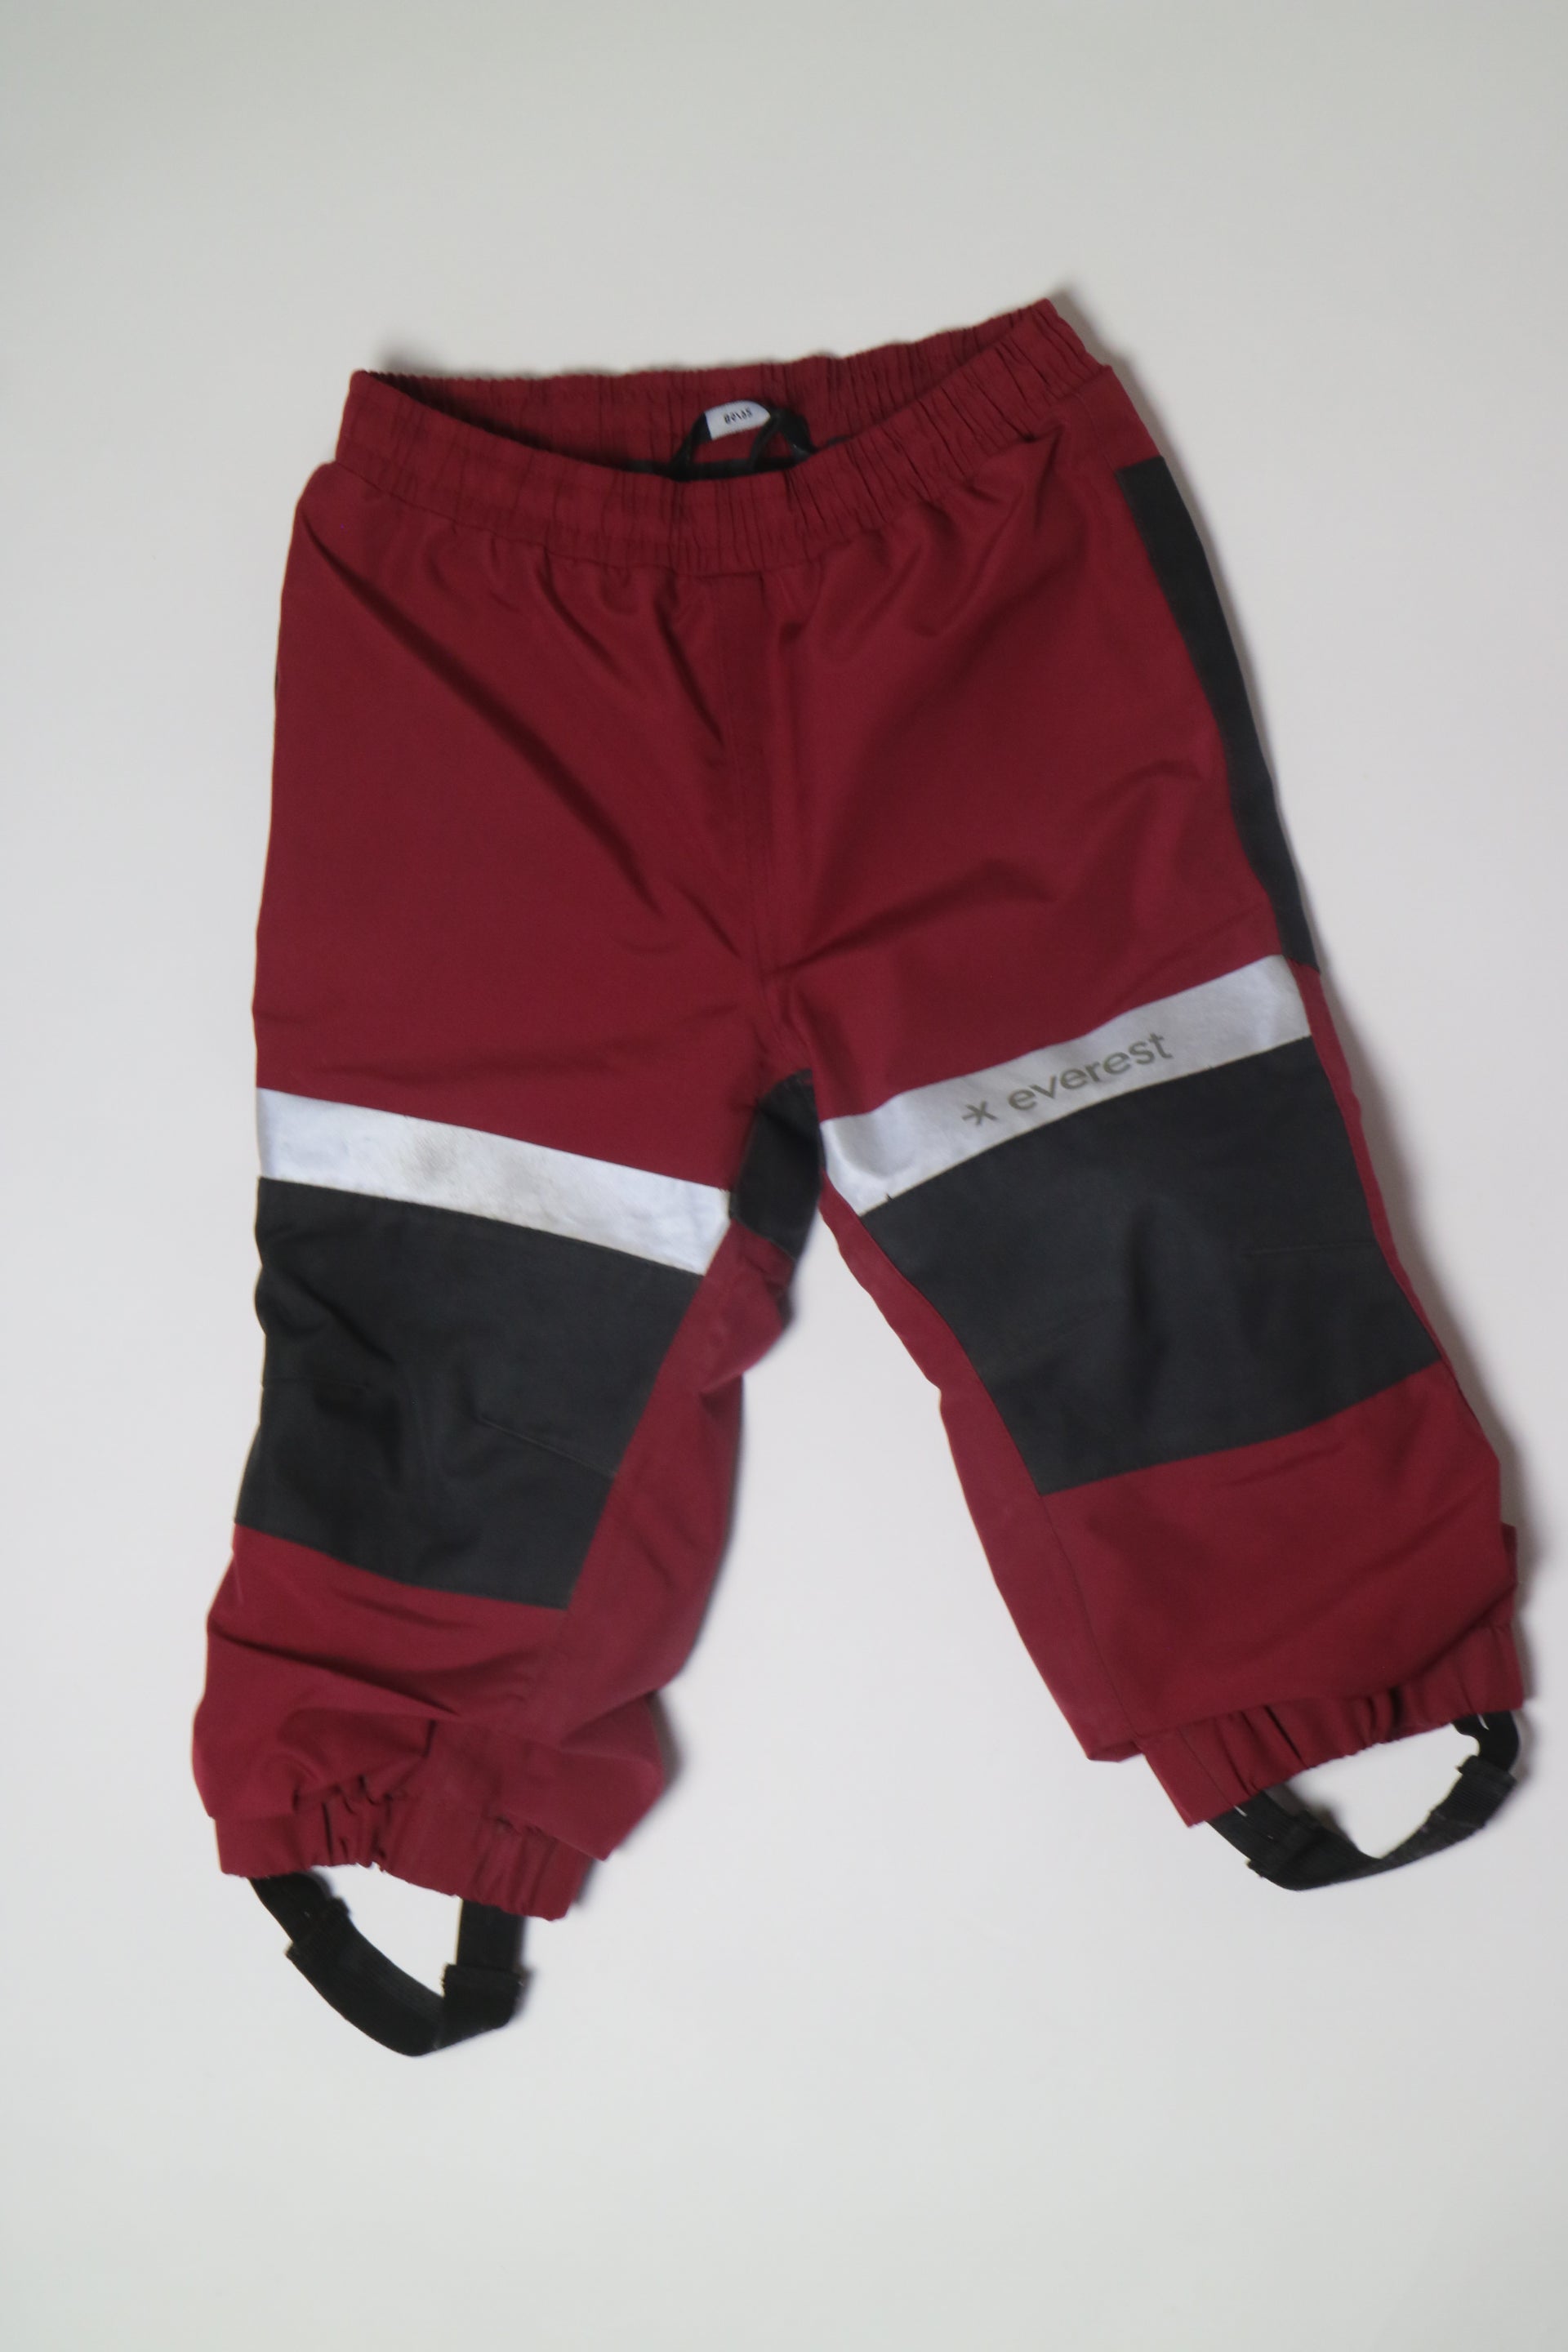 Röda och svarta skalbyxor från Everest med slitstarkt tyg för rumpan och knäna. 